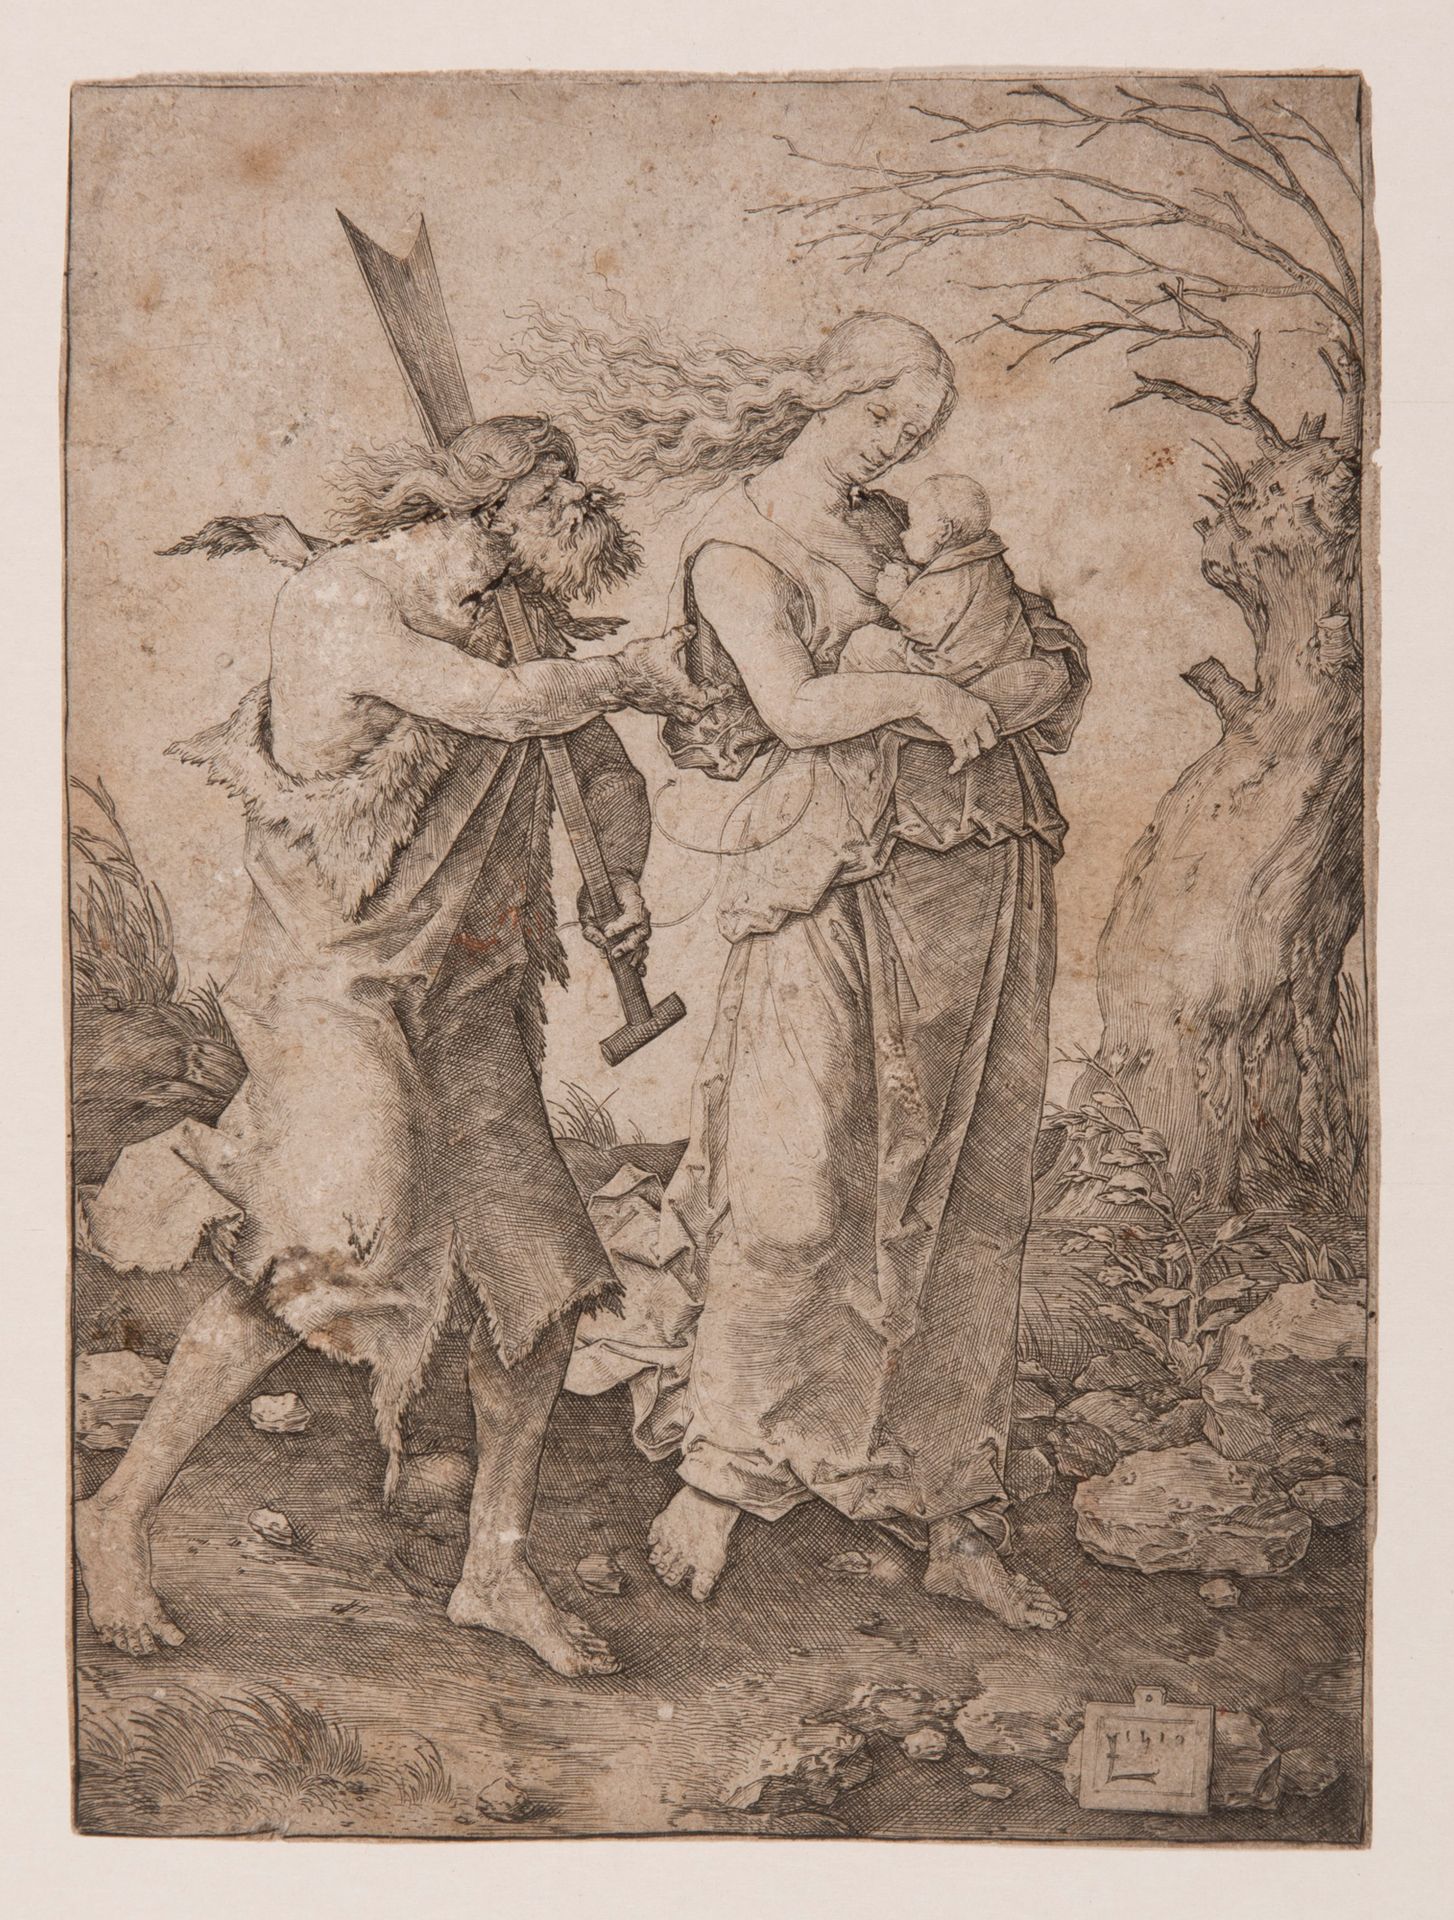 D'après Lucas VAN LEYDEN (1494-1533) 
Adán y Eva expulsados del paraíso, 1510
Gr&hellip;